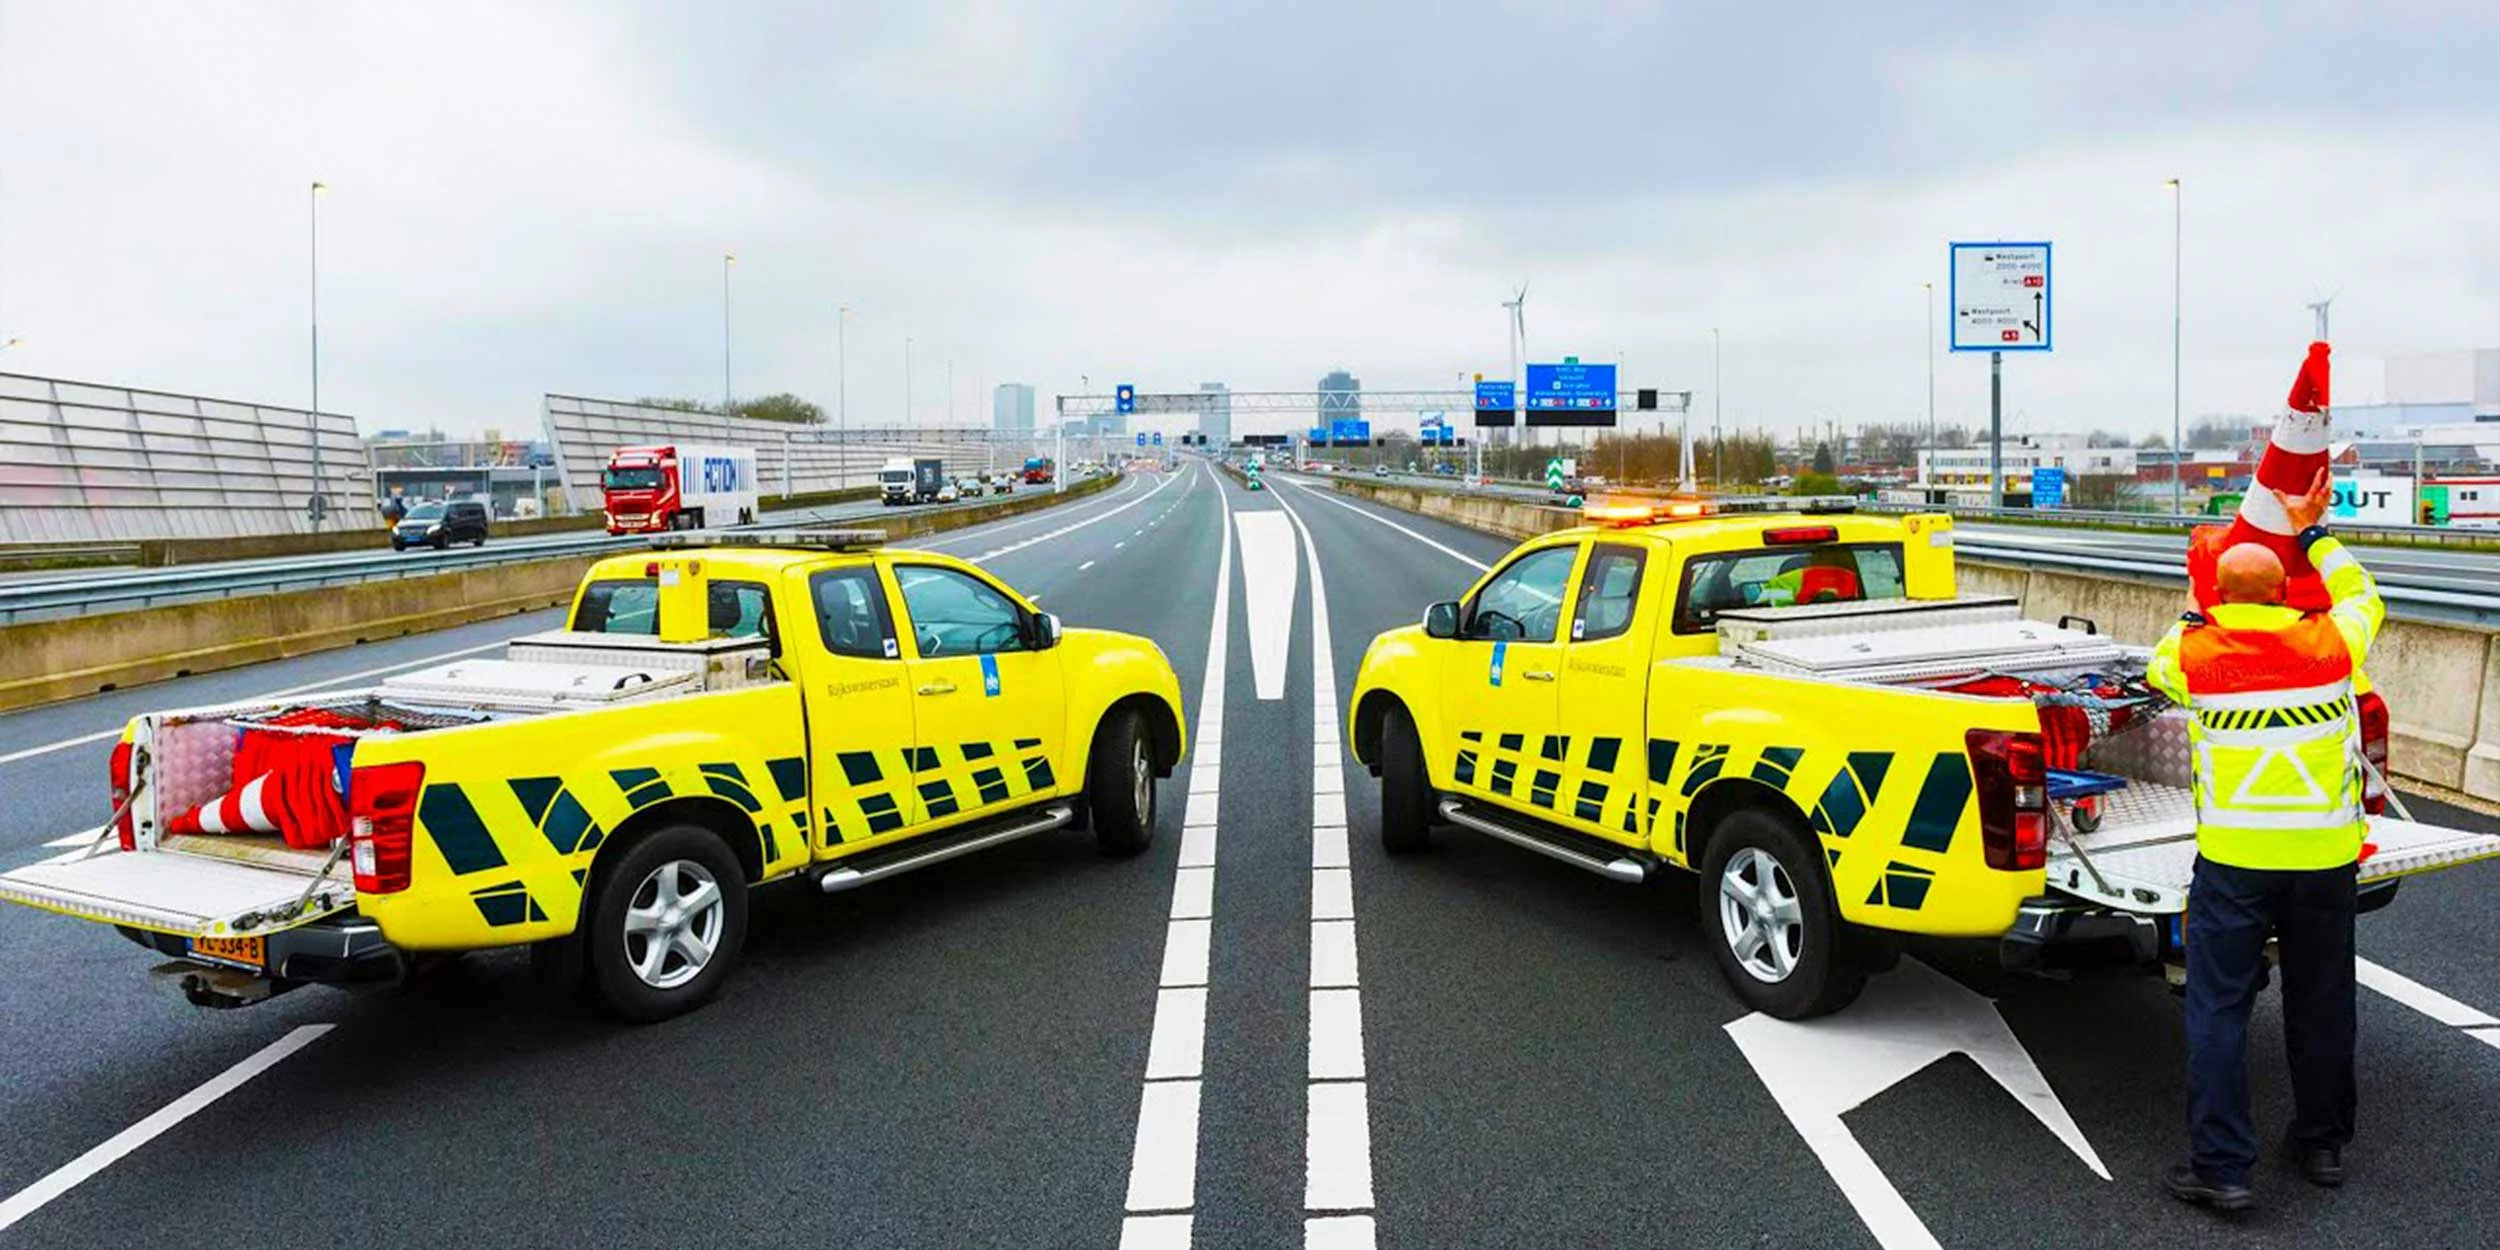 Twee auto’s van Rijkswaterstaat tijdens werkzaamheden op de snelweg, een medewerker zet in pion in de laadbak.